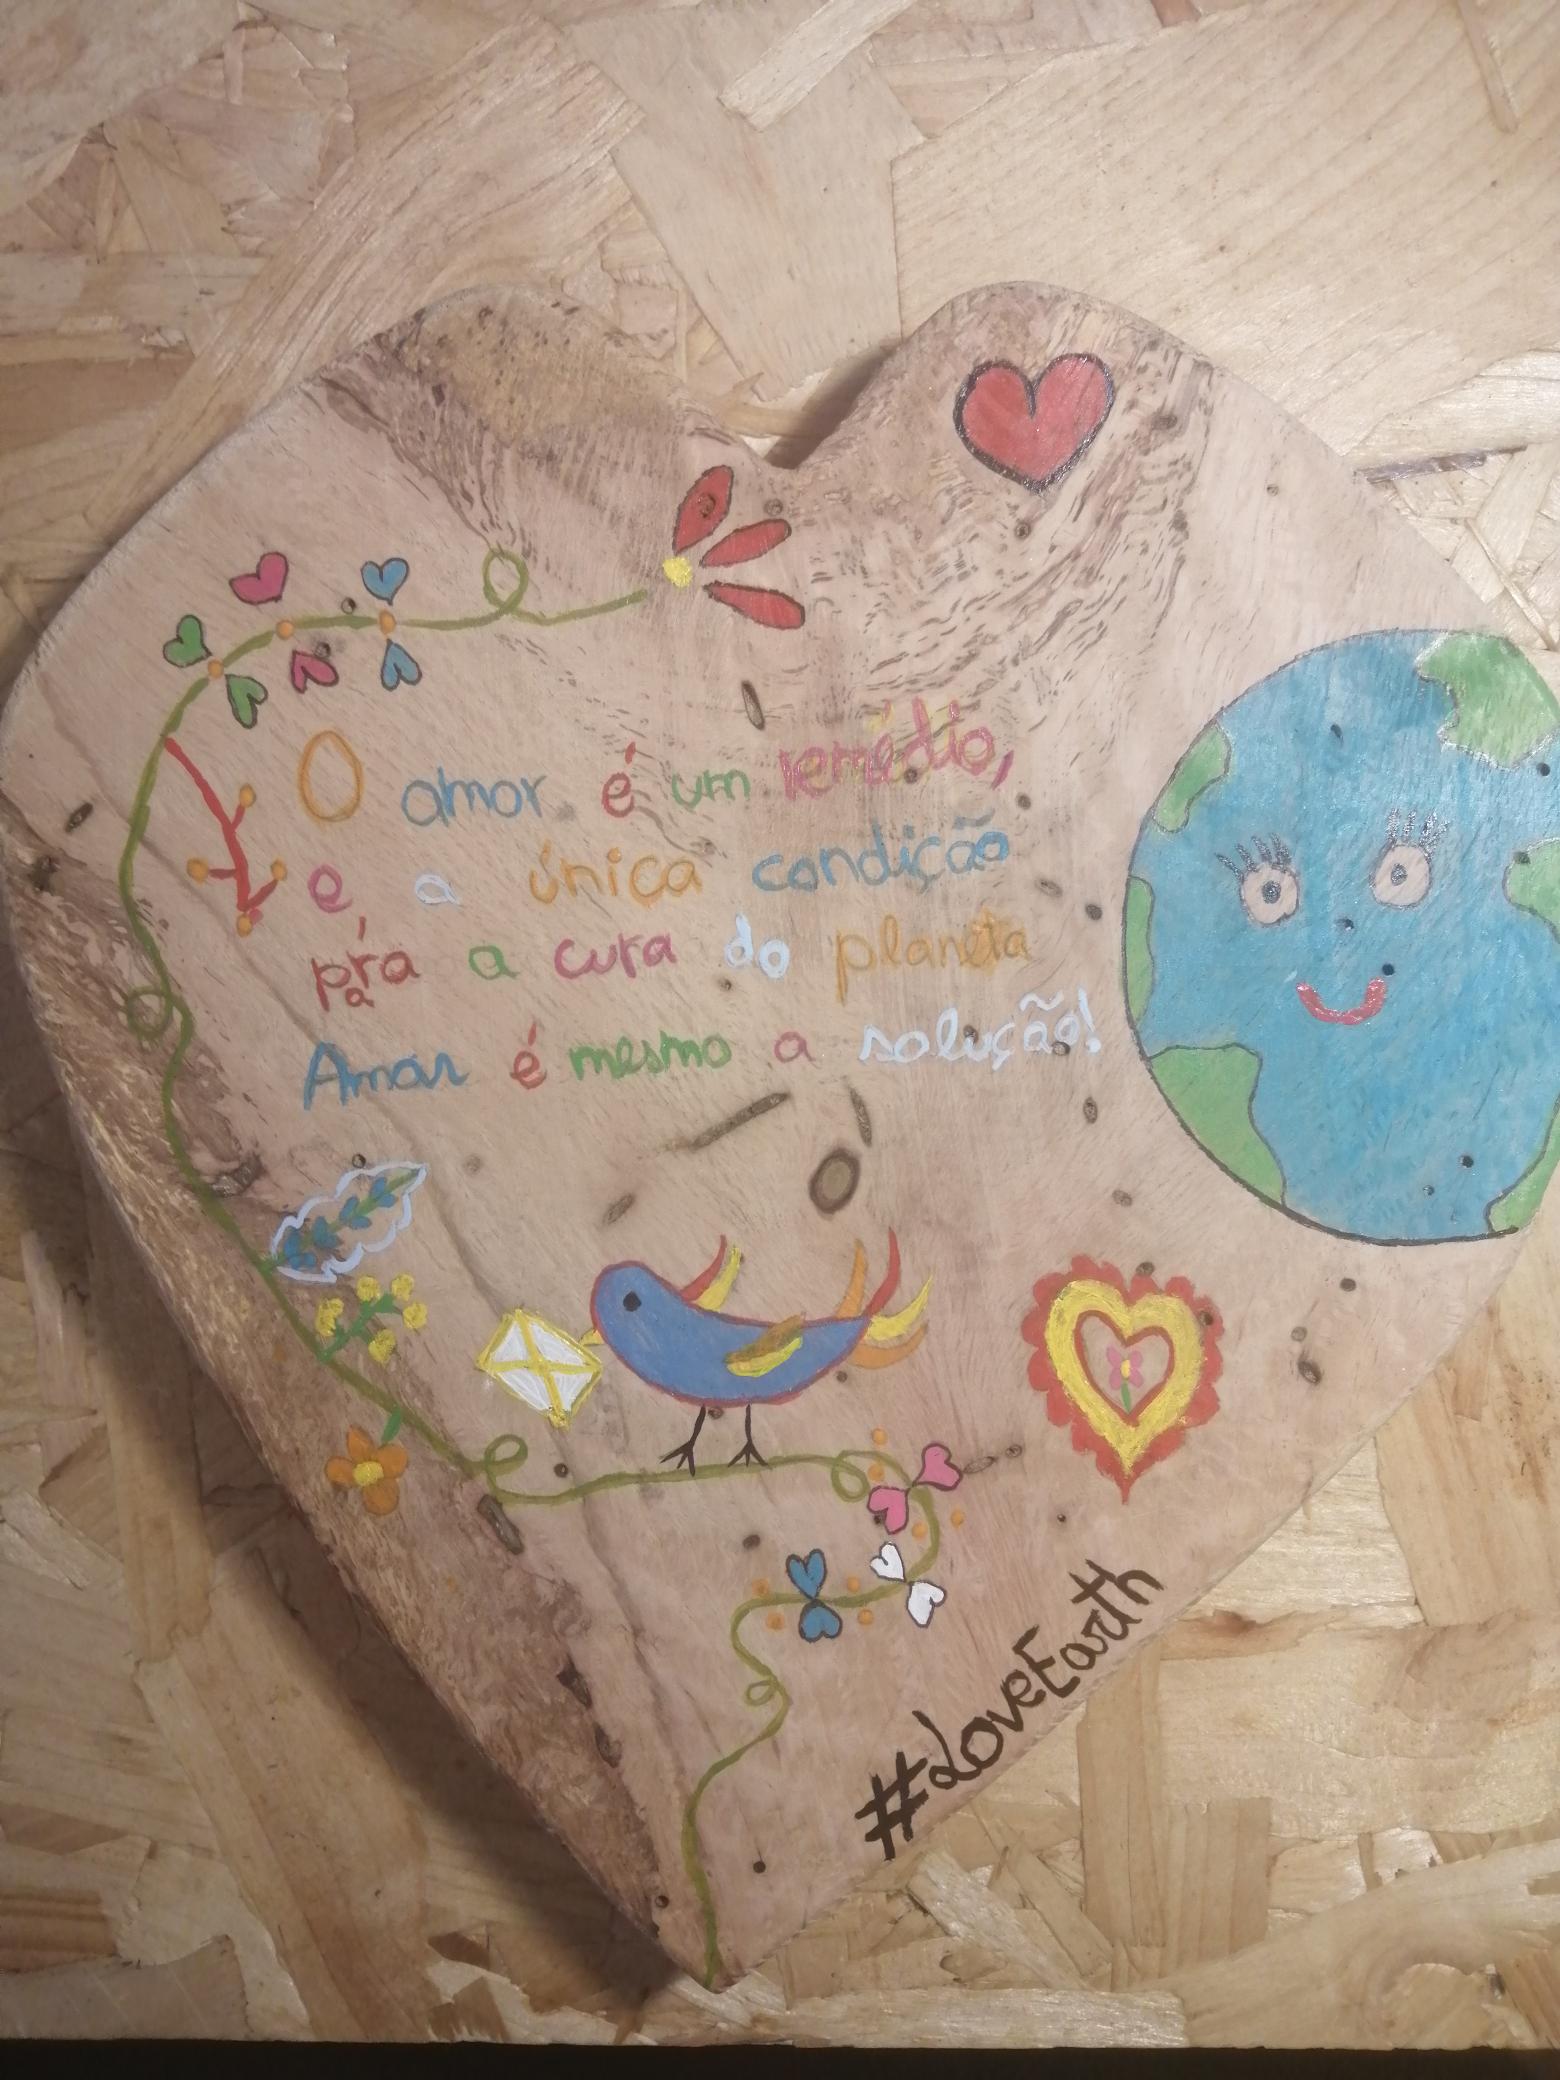 Leonor Pombo, 8º ano.<br/><br/>O amor é um remédio,<br />
E a única condição<br />
Para a cura do Planeta<br />
Amar é mesmo a solução!